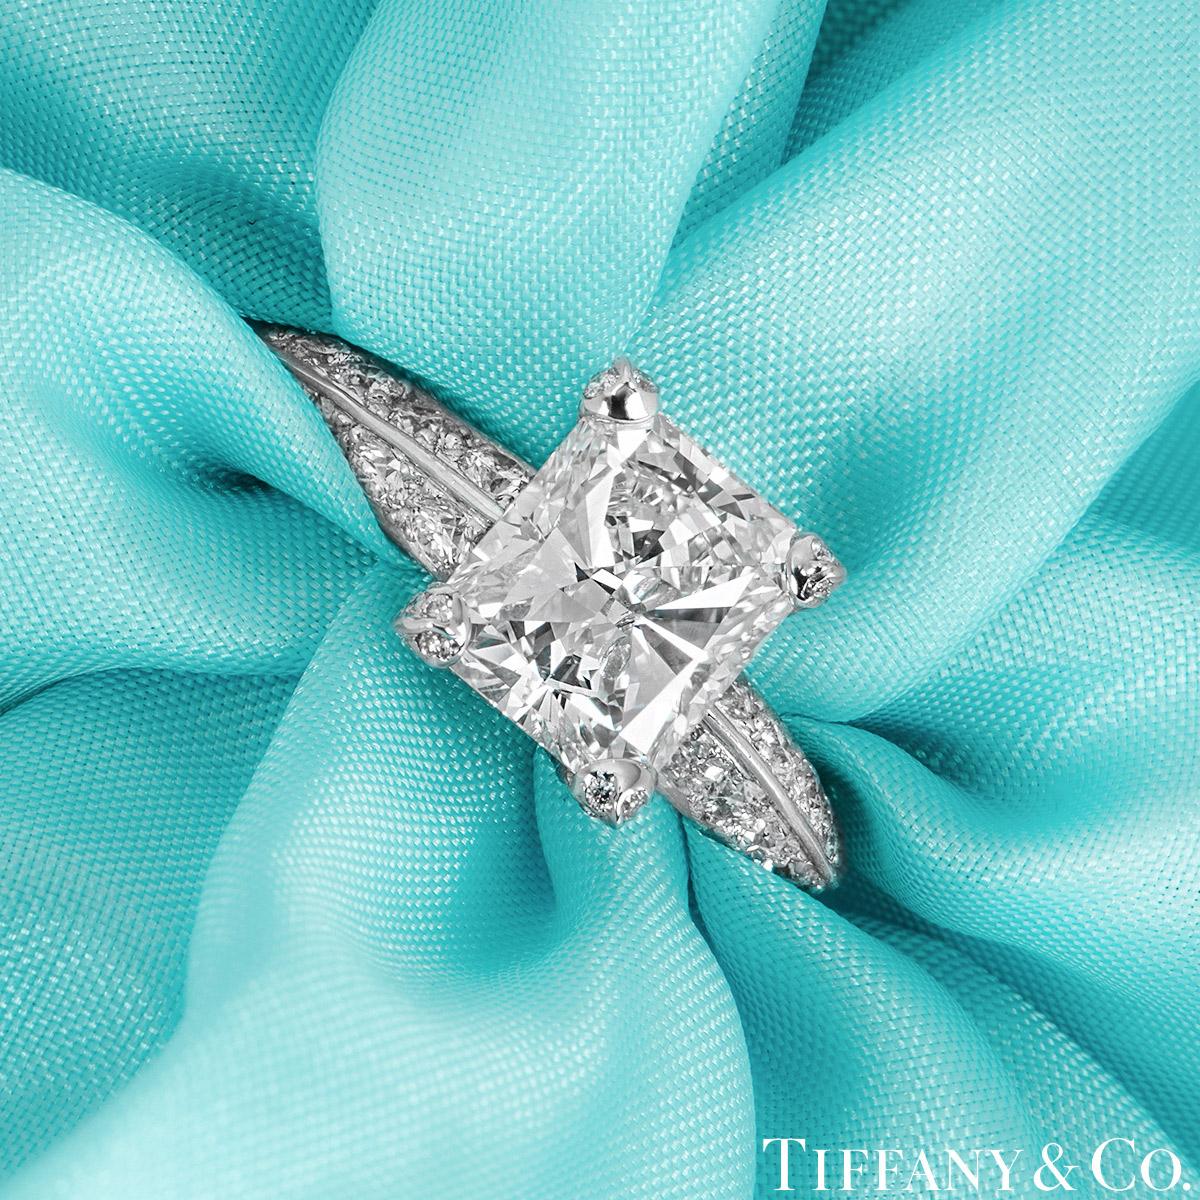 Une superbe bague de fiançailles en platine et diamant de Tiffany & Co. La bague est sertie au centre d'un diamant de taille radieuse dans une monture exquise à quatre griffes, pesant 2,01ct, de couleur G et de pureté IF (internally flawless). La